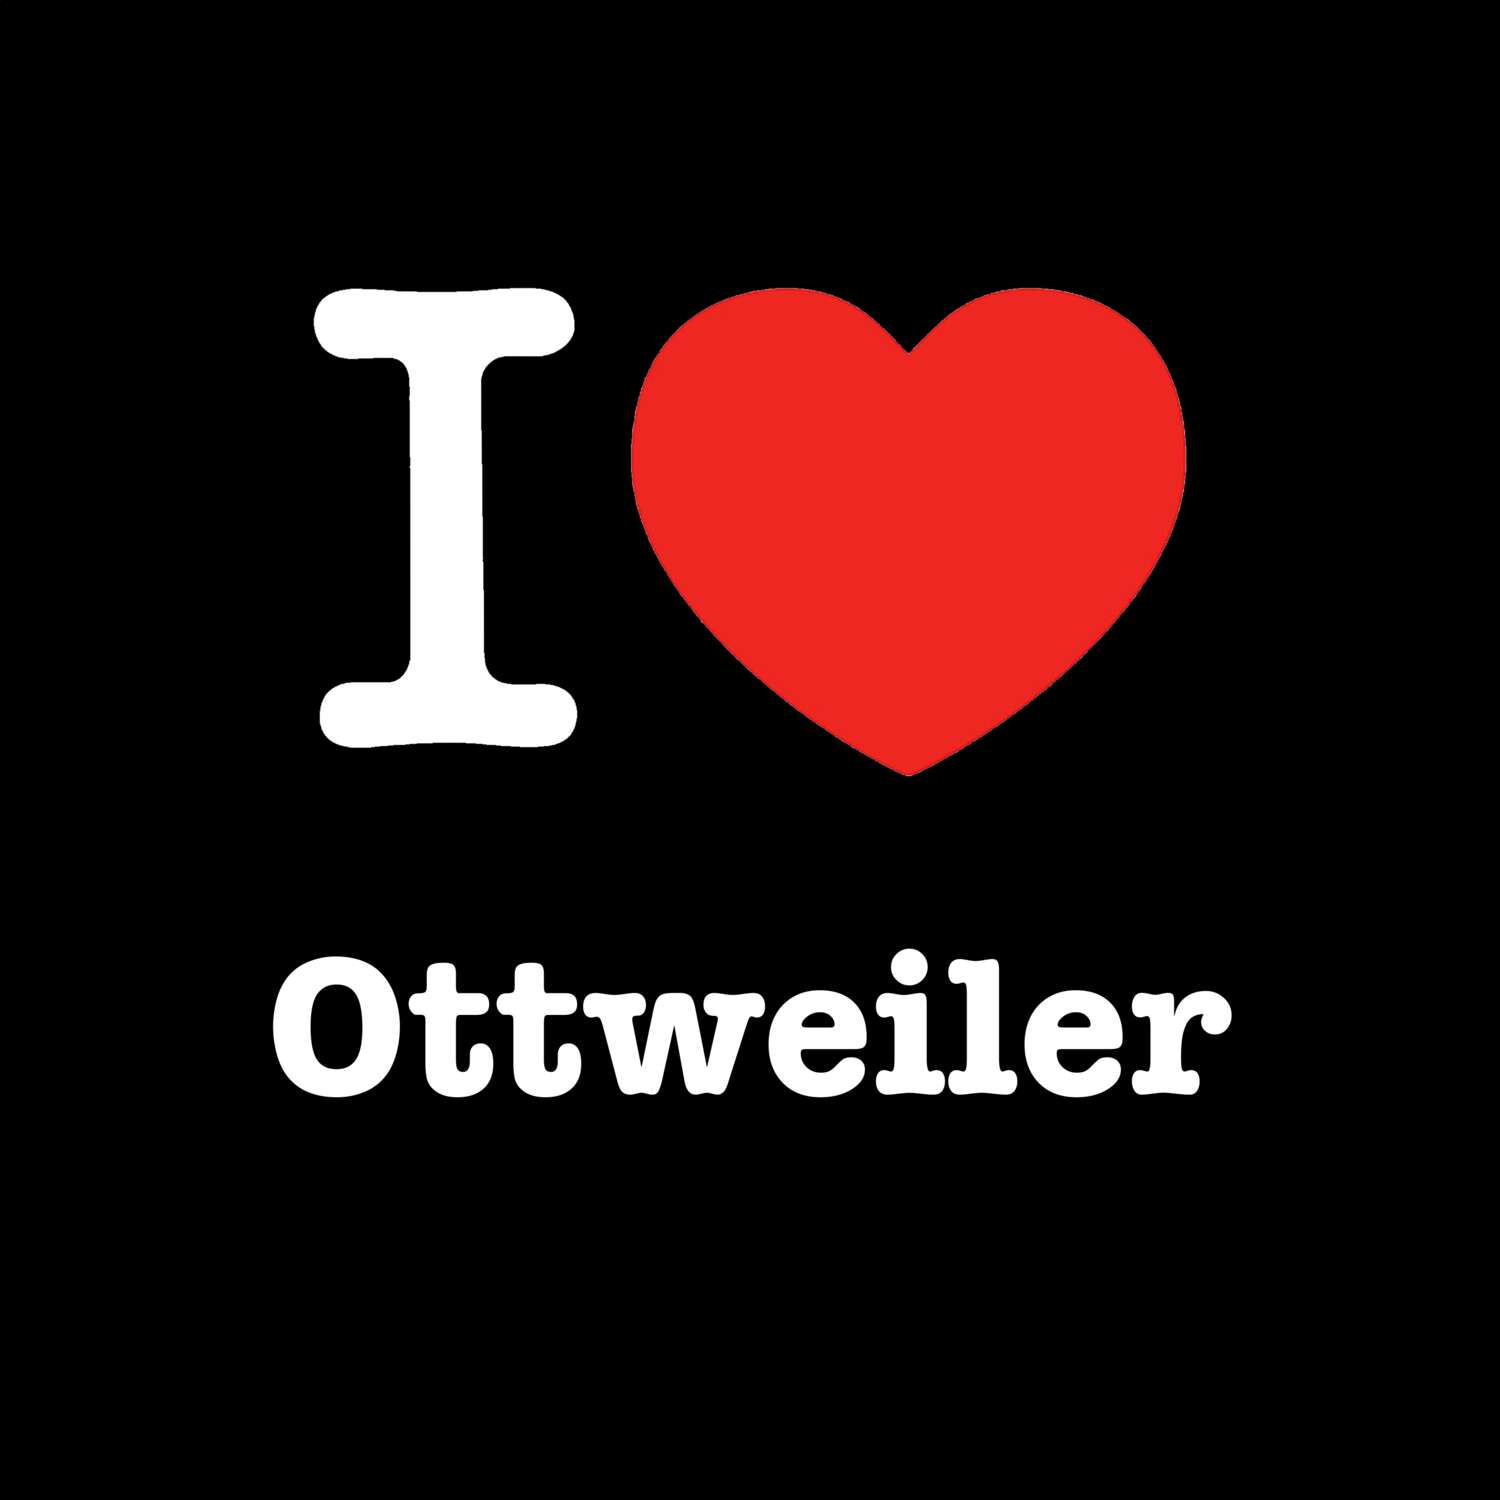 Ottweiler T-Shirt »I love«